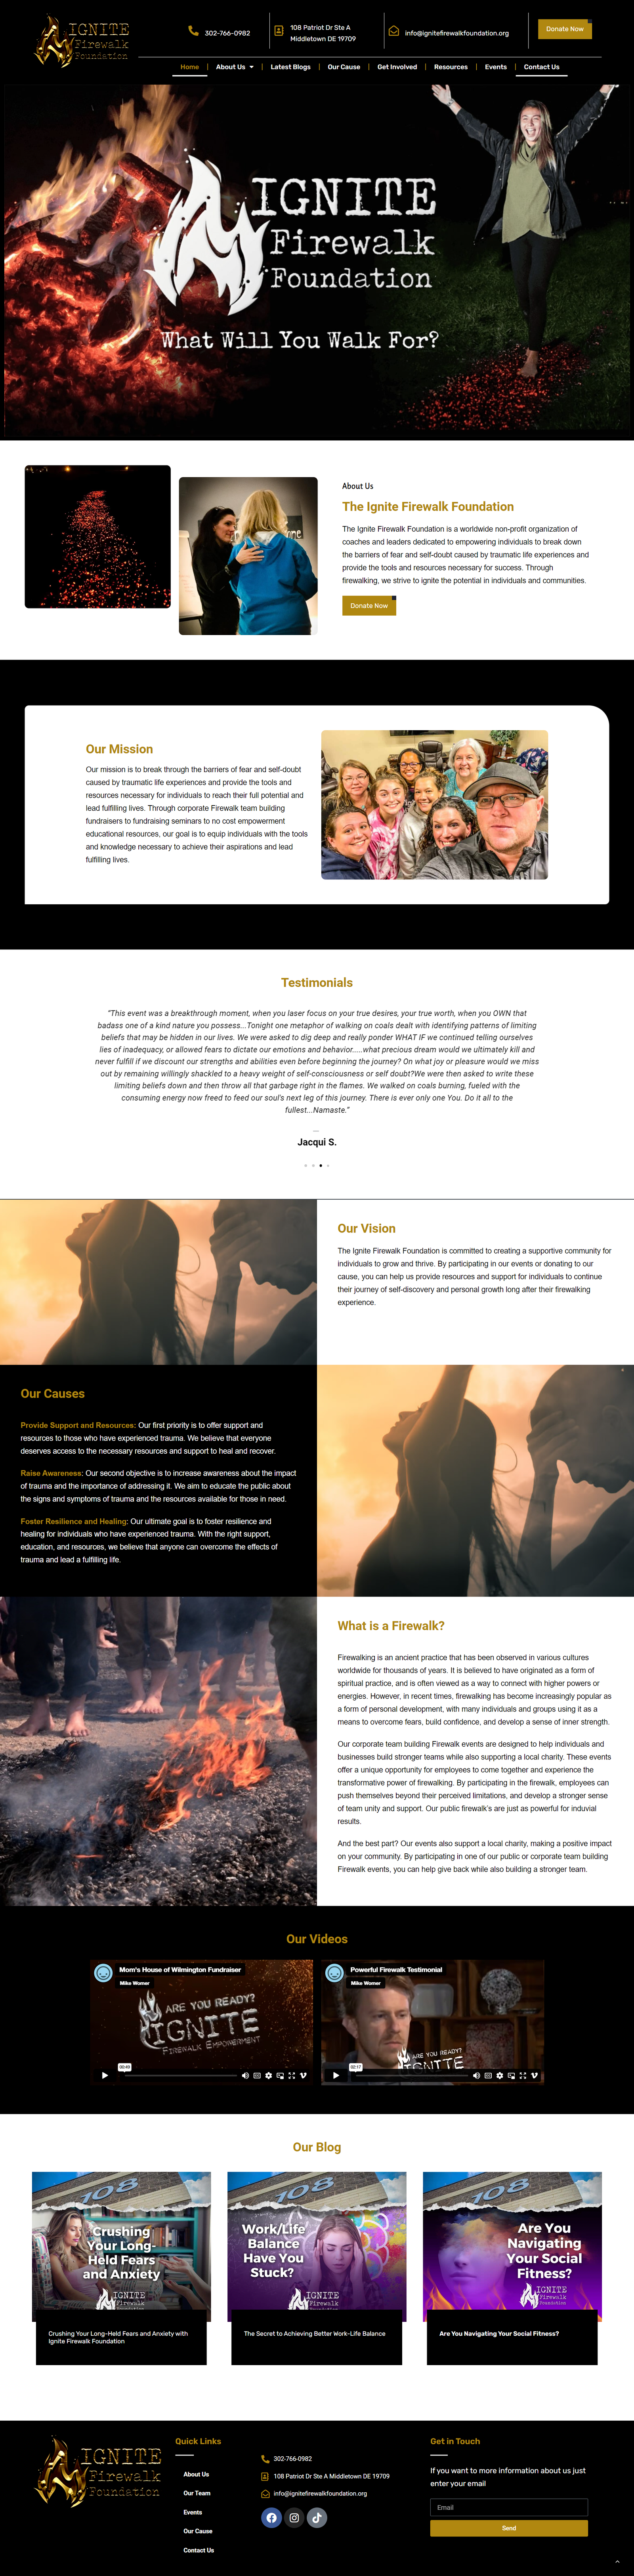 a screenshot of fire website design